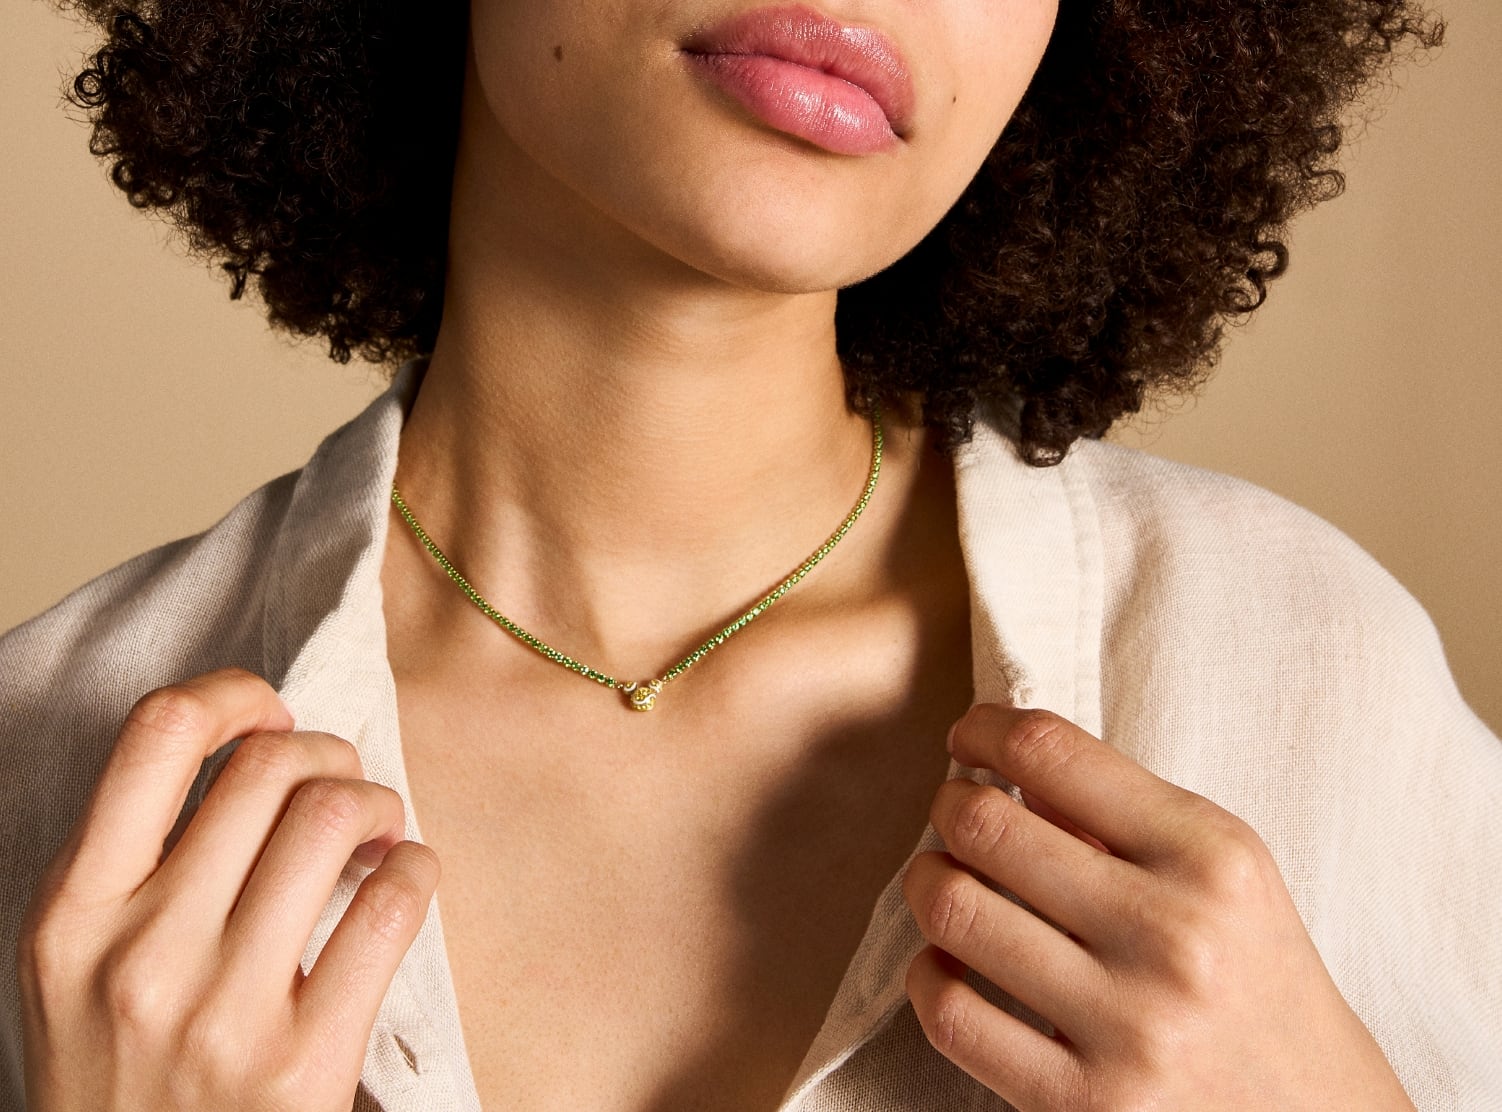 L’image montre une femme portant le collier avec une chemise boutonnée décontractée. Le collier est court et s’arrête au niveau de la clavicule.